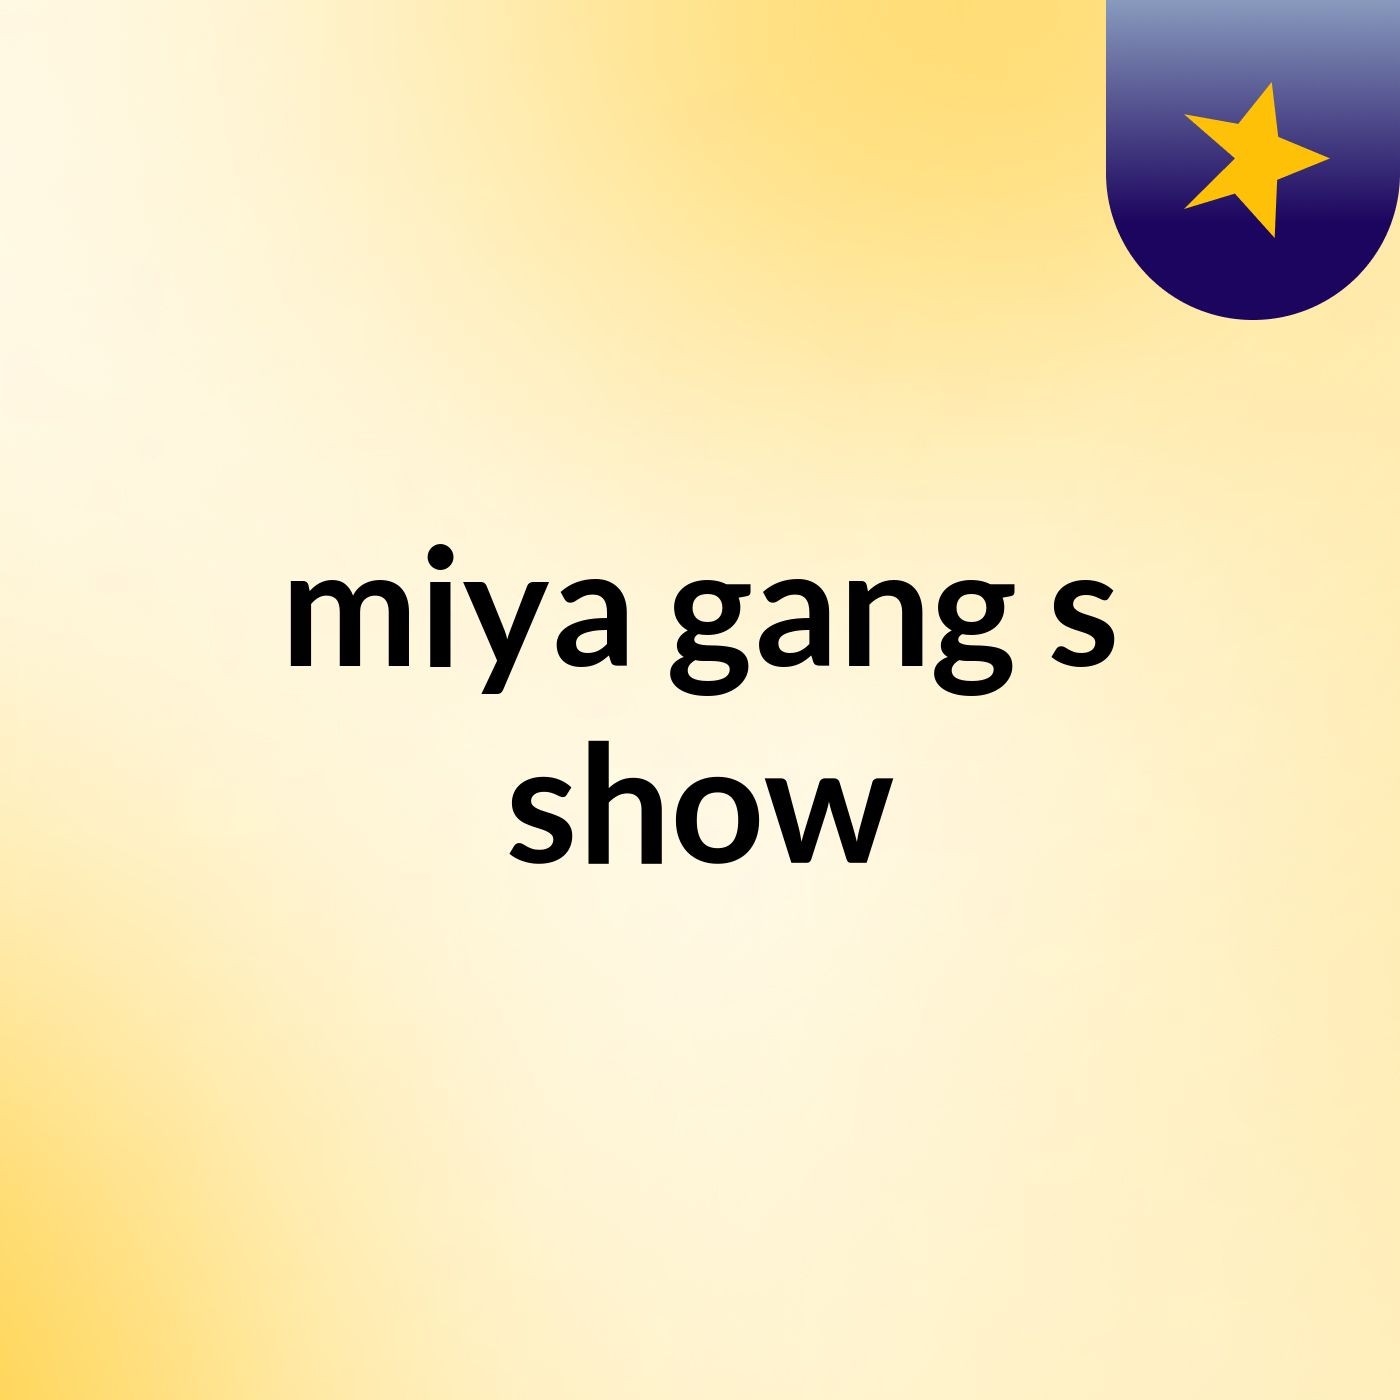 miya gang's show